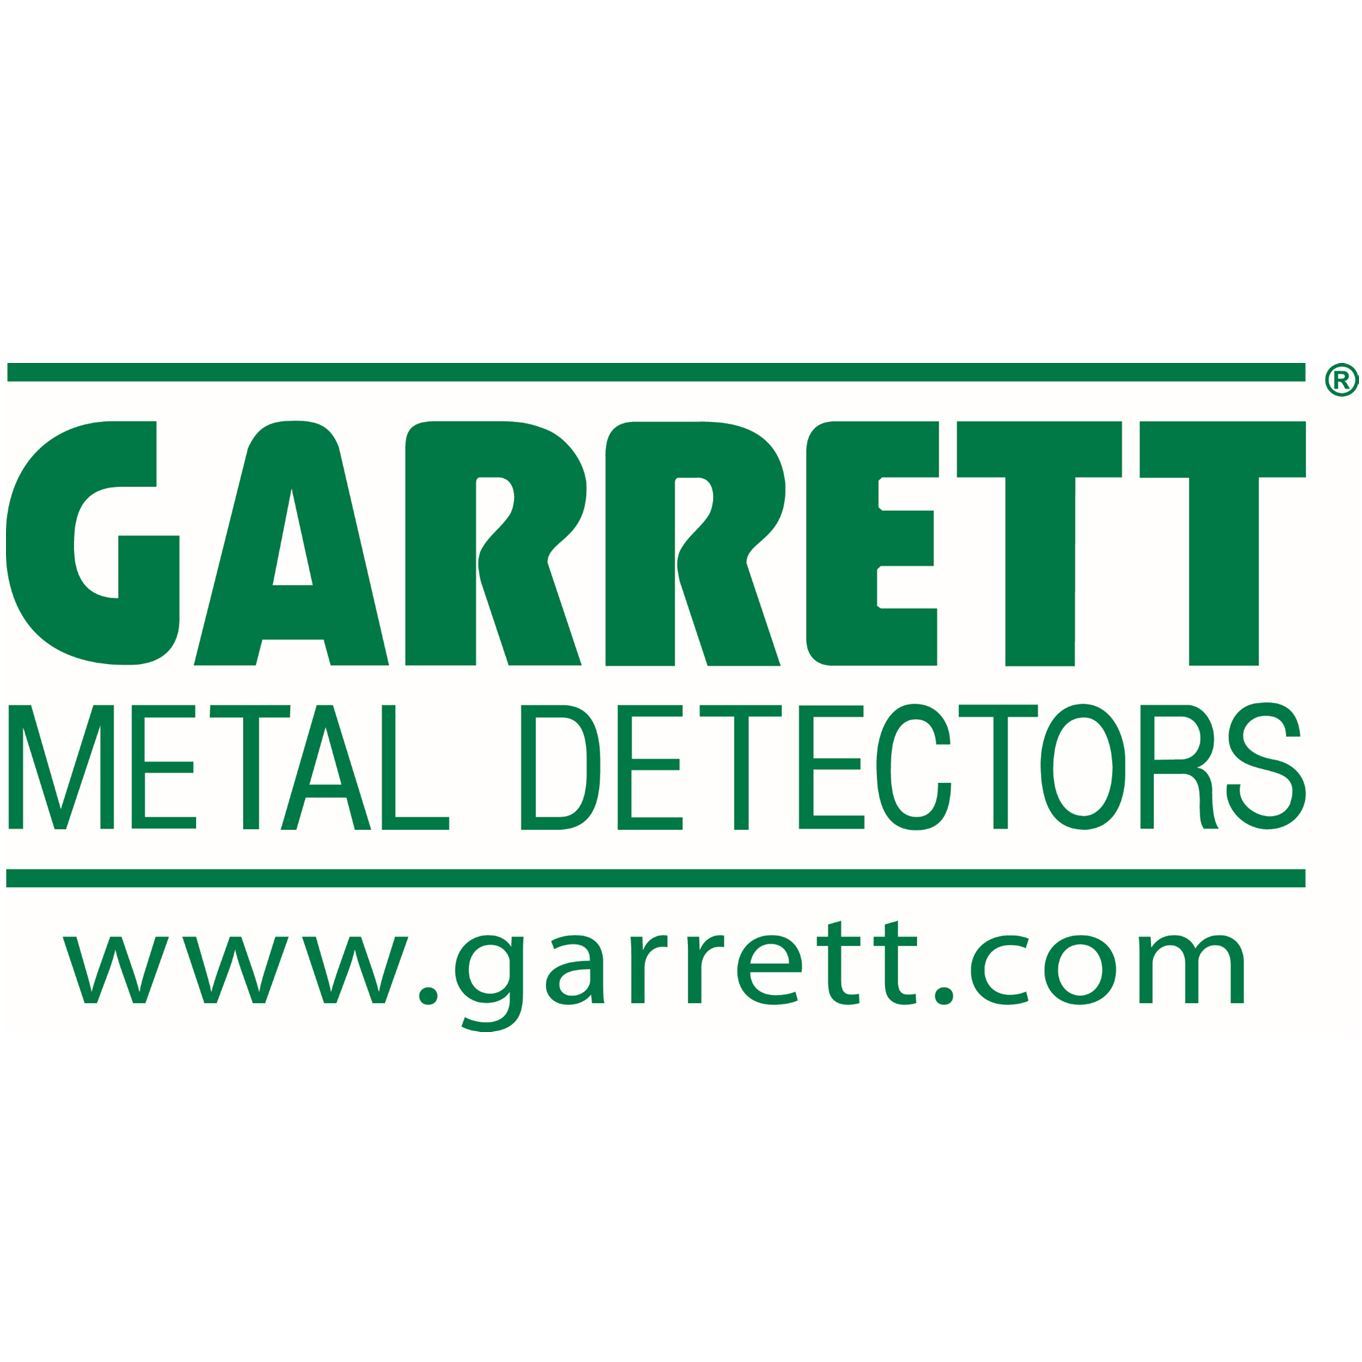 Our Top Metal Detector Manufacturers #1 Garrett Metal Detectors